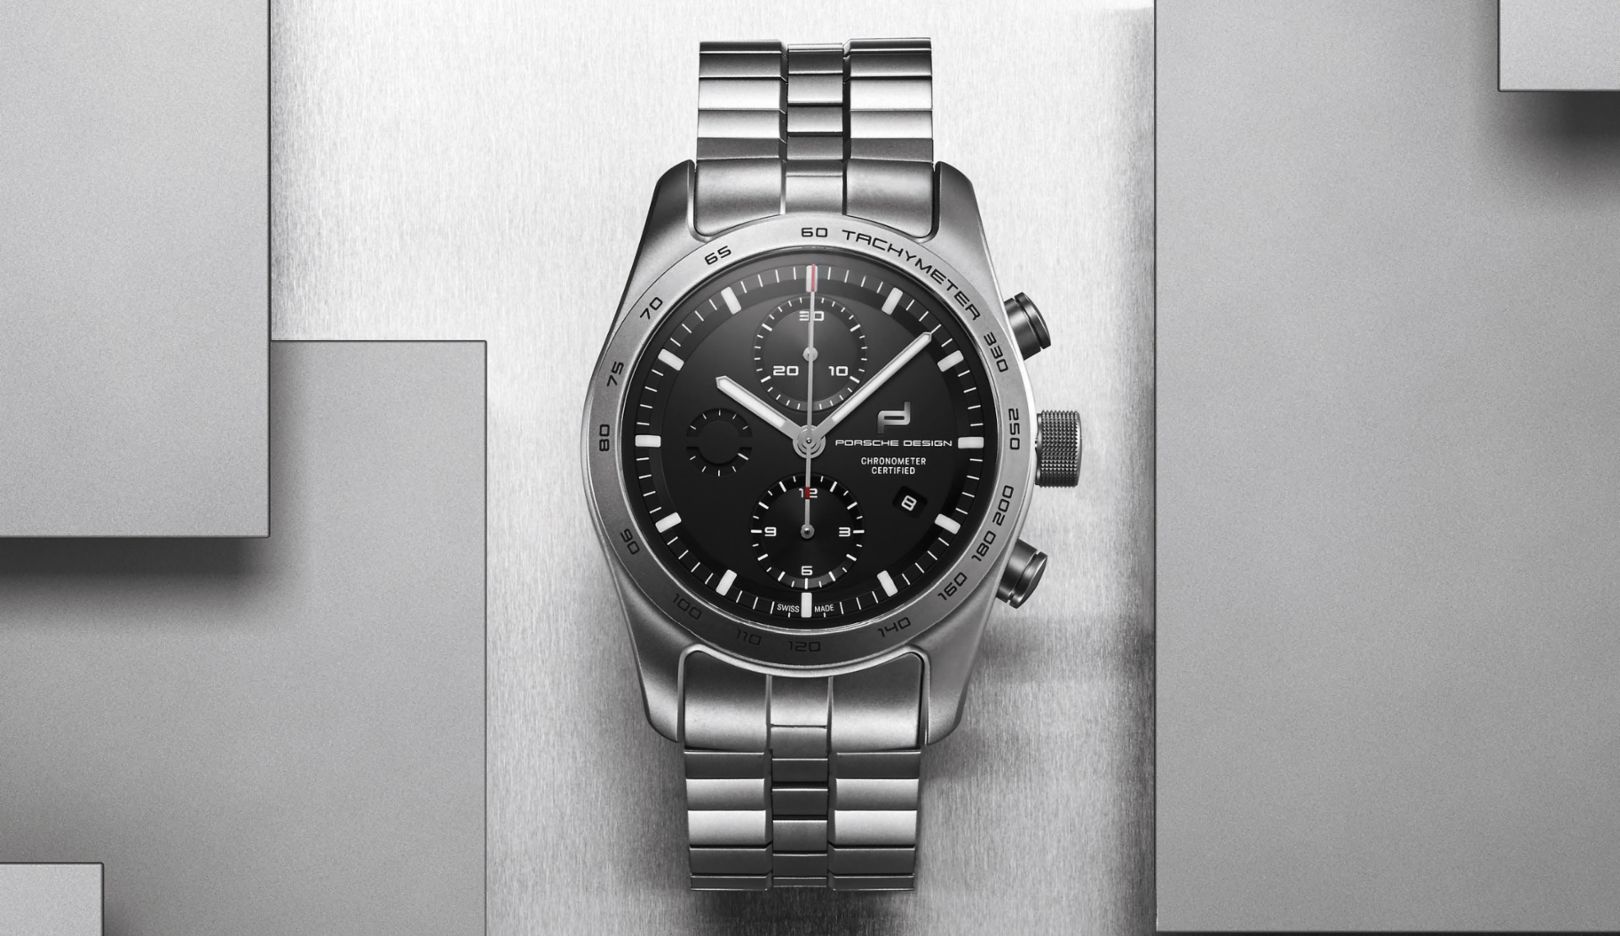 Edelmetaal: De horlogekast en armband zijn gemaakt van titanium.